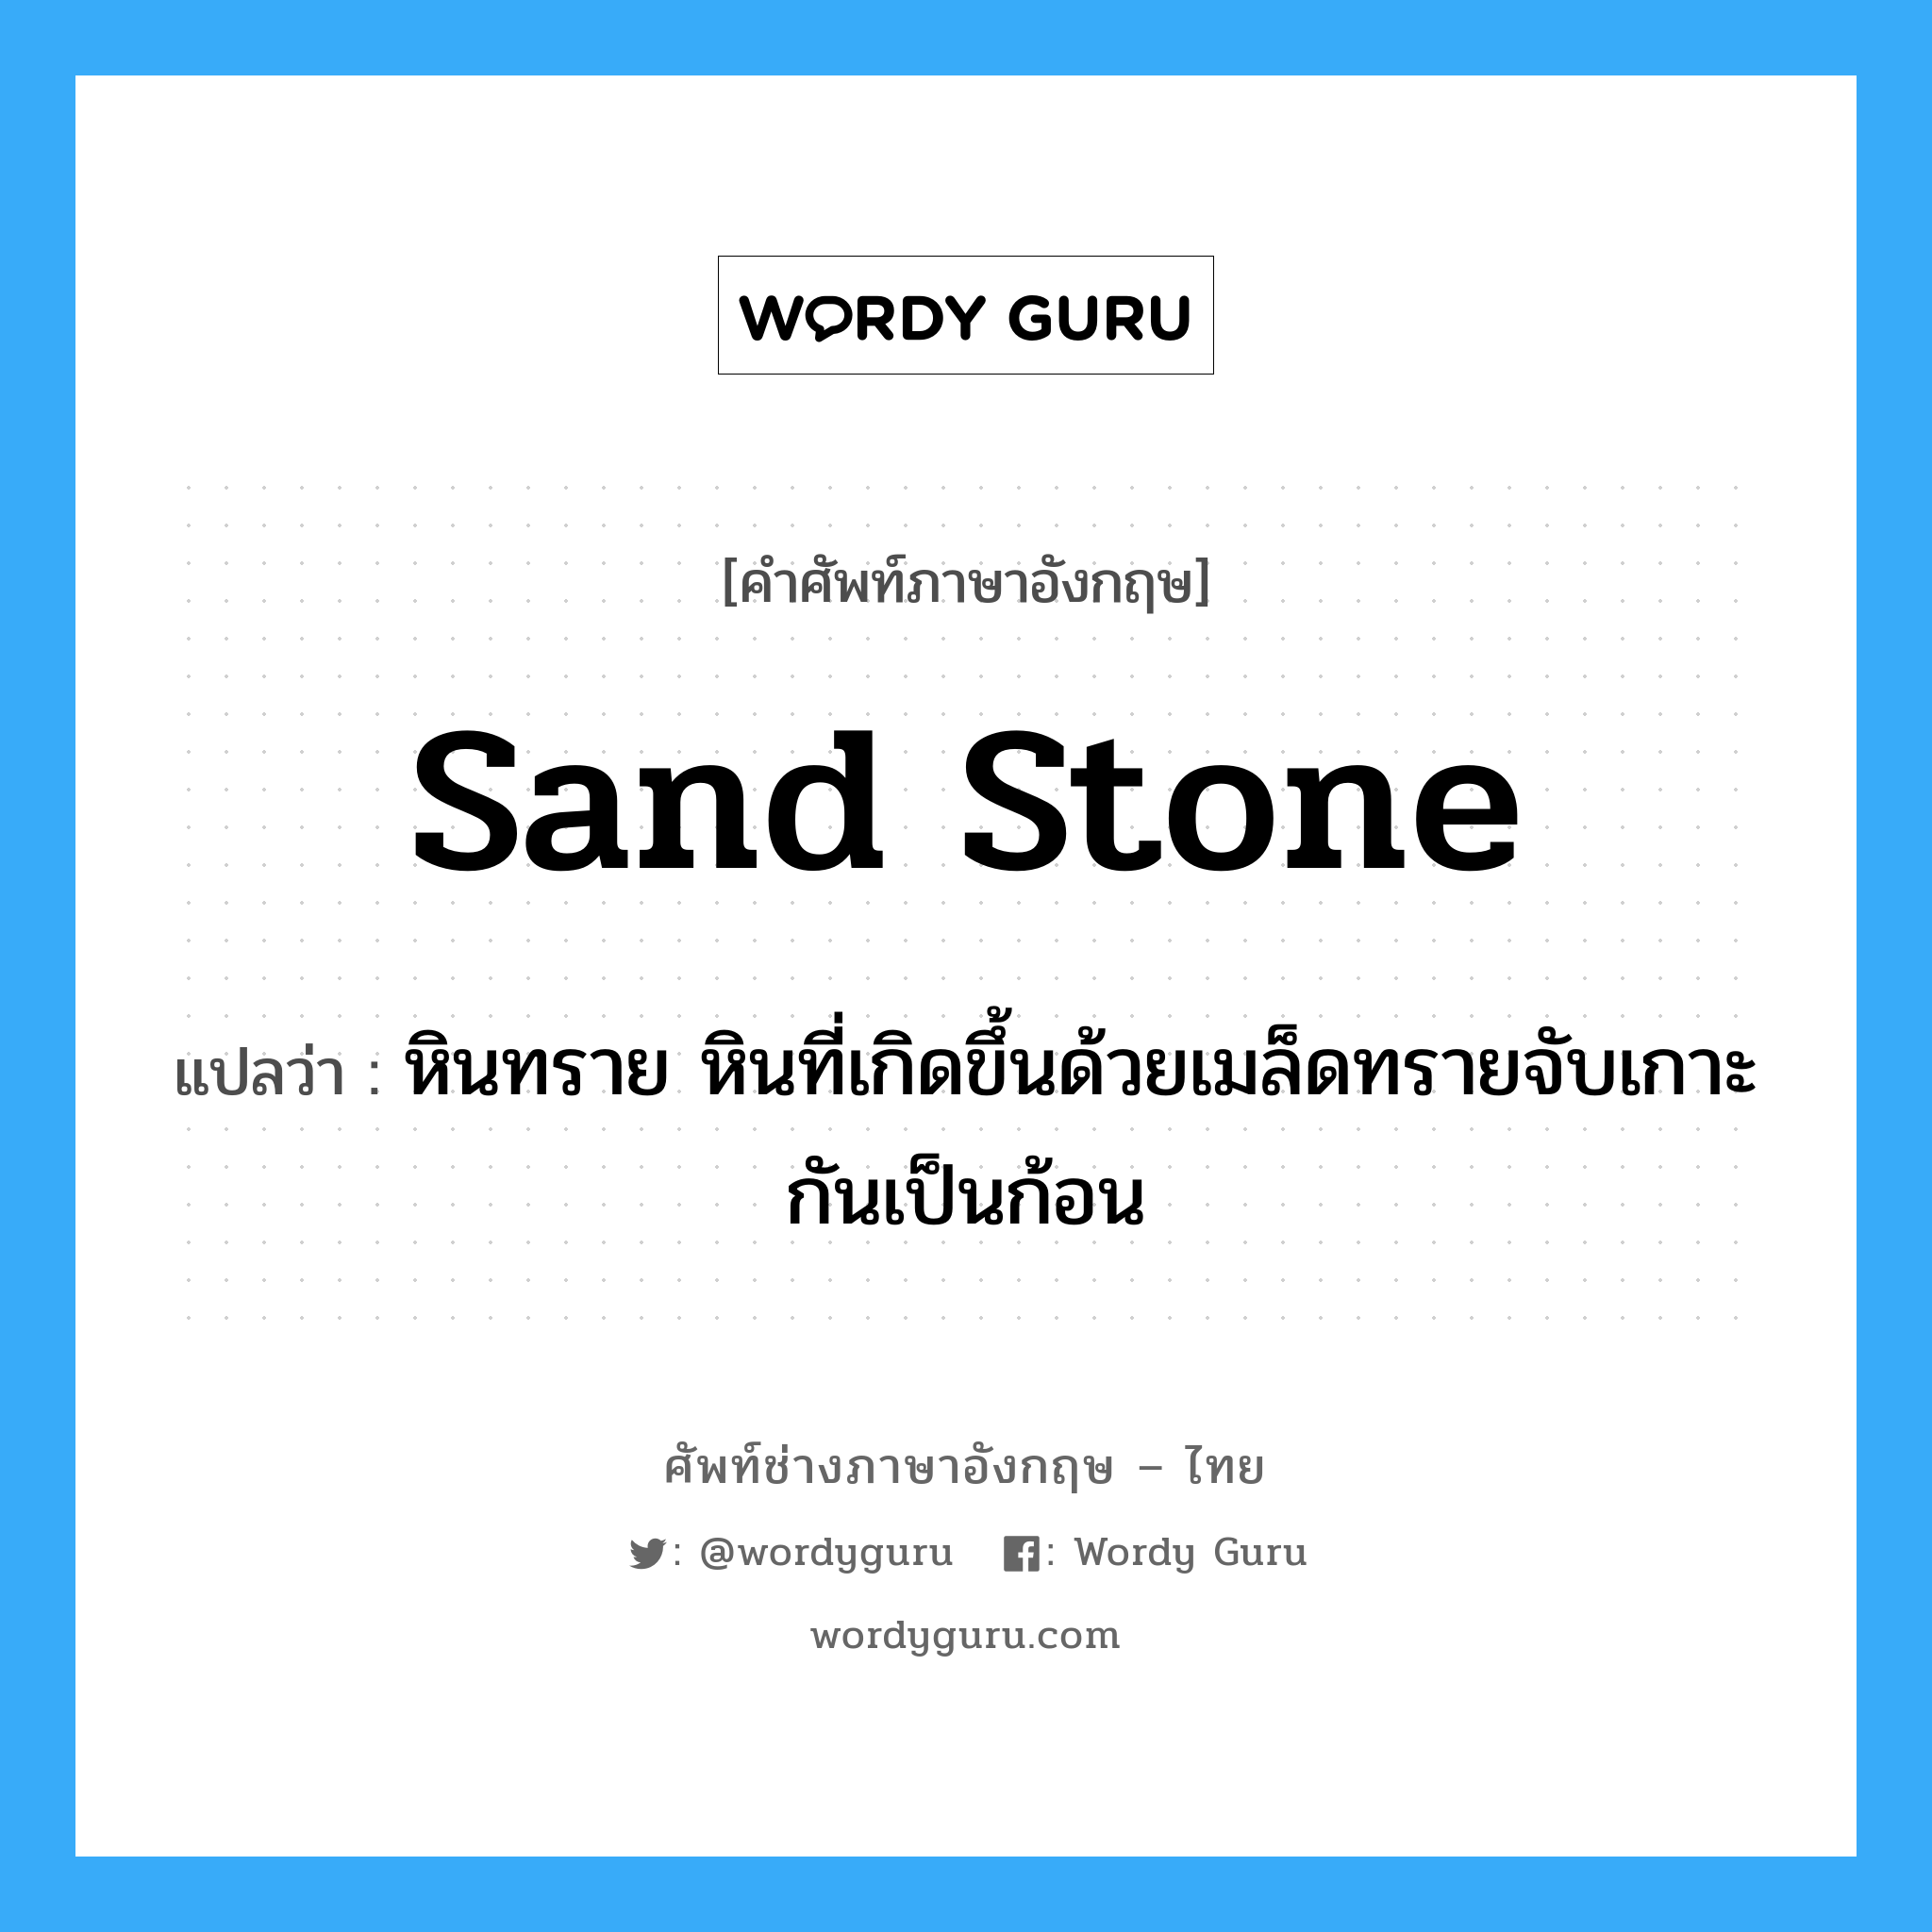 หินทราย ภาษาอังกฤษ?, คำศัพท์ช่างภาษาอังกฤษ - ไทย หินทราย หินที่เกิดขึ้นด้วยเมล็ดทรายจับเกาะกันเป็นก้อน คำศัพท์ภาษาอังกฤษ หินทราย หินที่เกิดขึ้นด้วยเมล็ดทรายจับเกาะกันเป็นก้อน แปลว่า sand stone